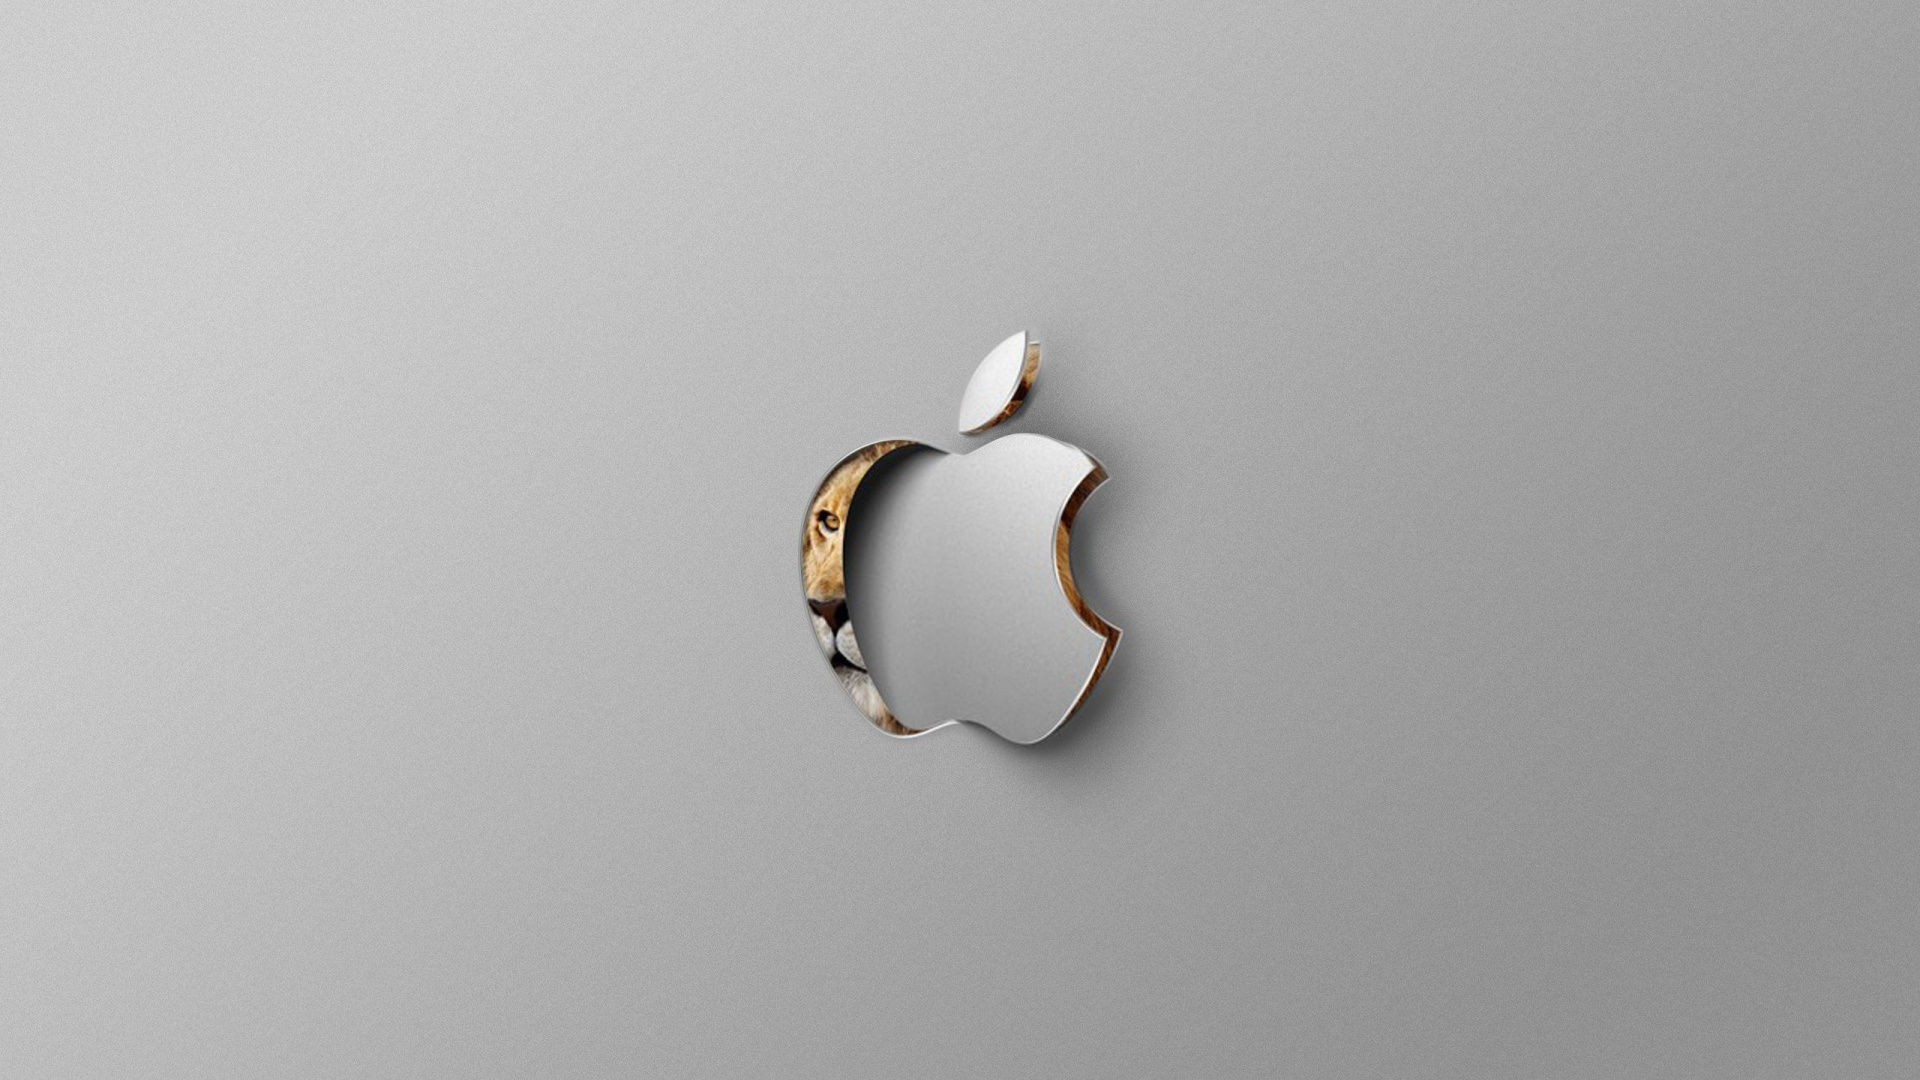 Apple, 珠宝, OS X山狮, 操作系统, 体的珠宝 壁纸 1920x1080 允许